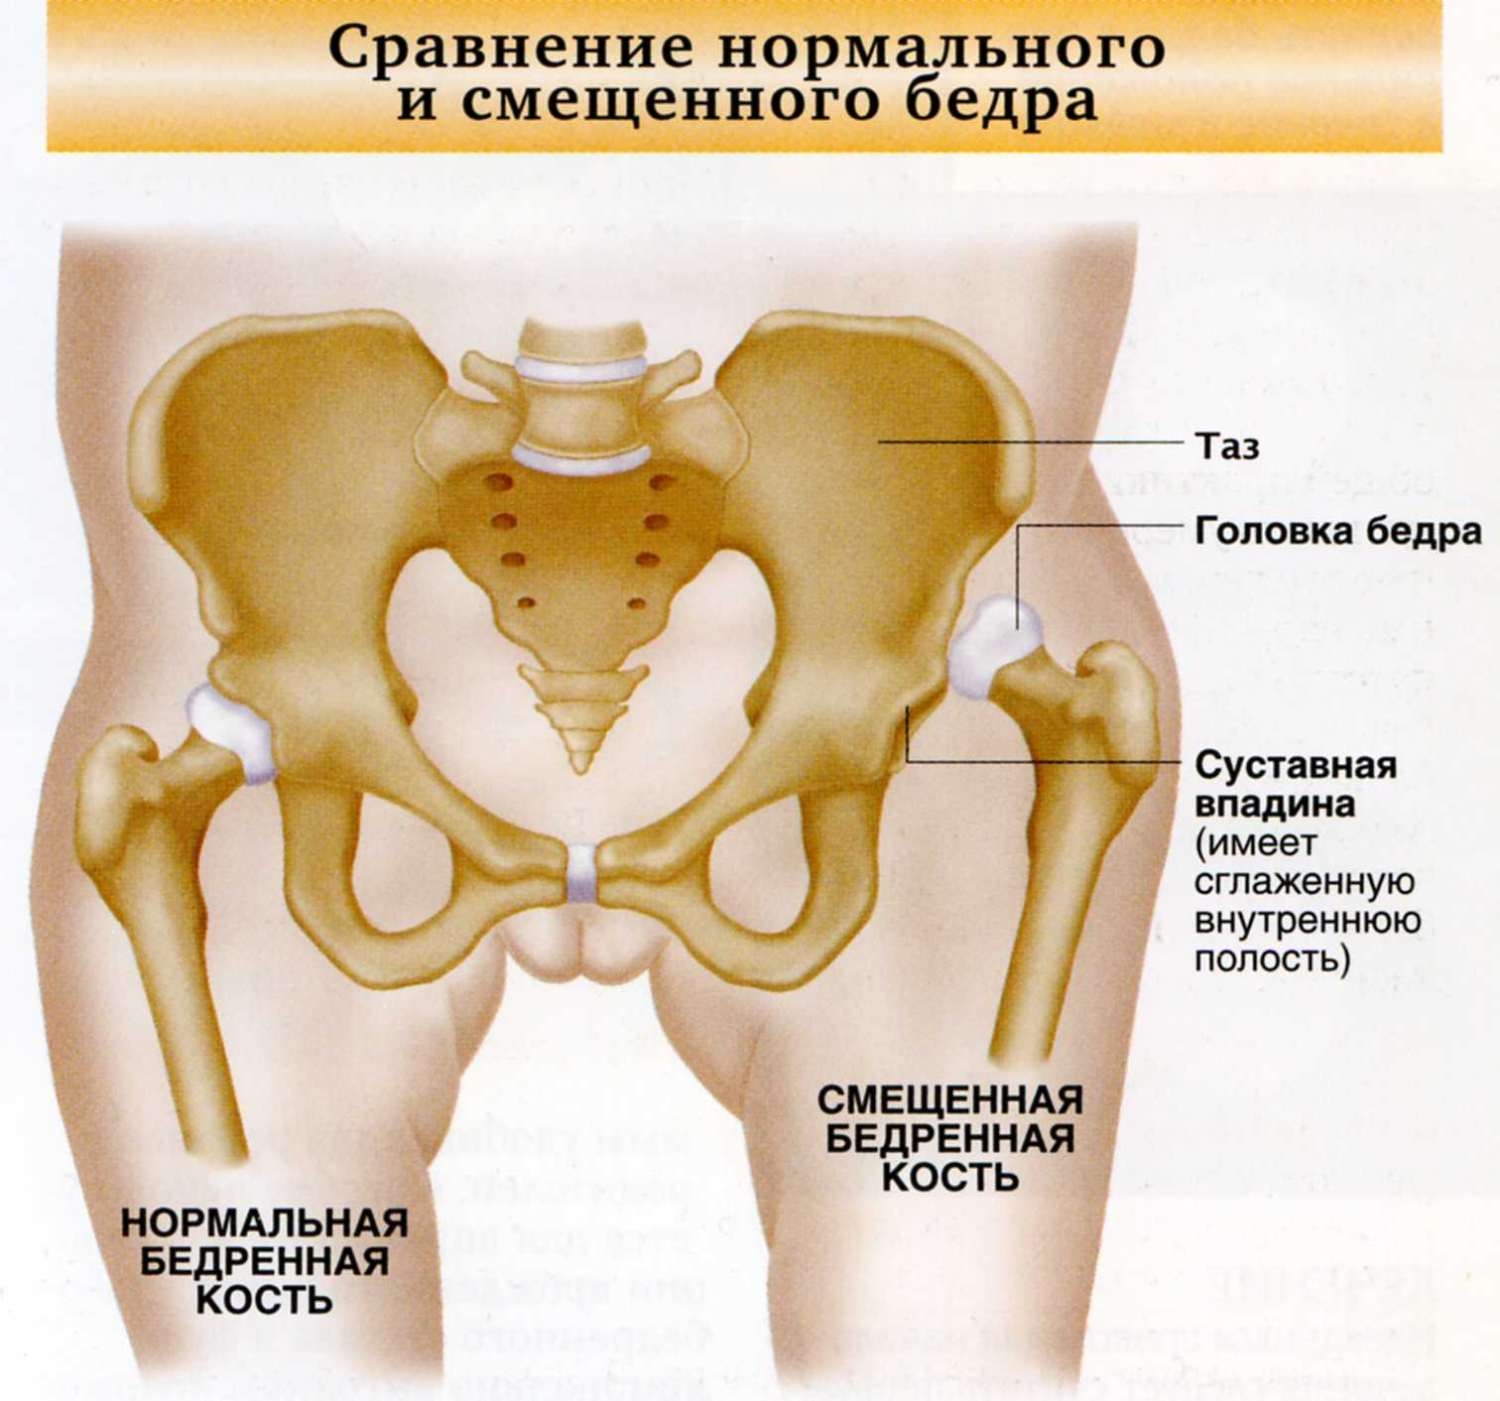 1 подвздошная кость. Дисплазия вывих тазобедренного сустава. Врожденный вывих тазобедренного сустава. Подвздошная кость суставная впадина. Вывих и подвывих тазобедренного сустава.